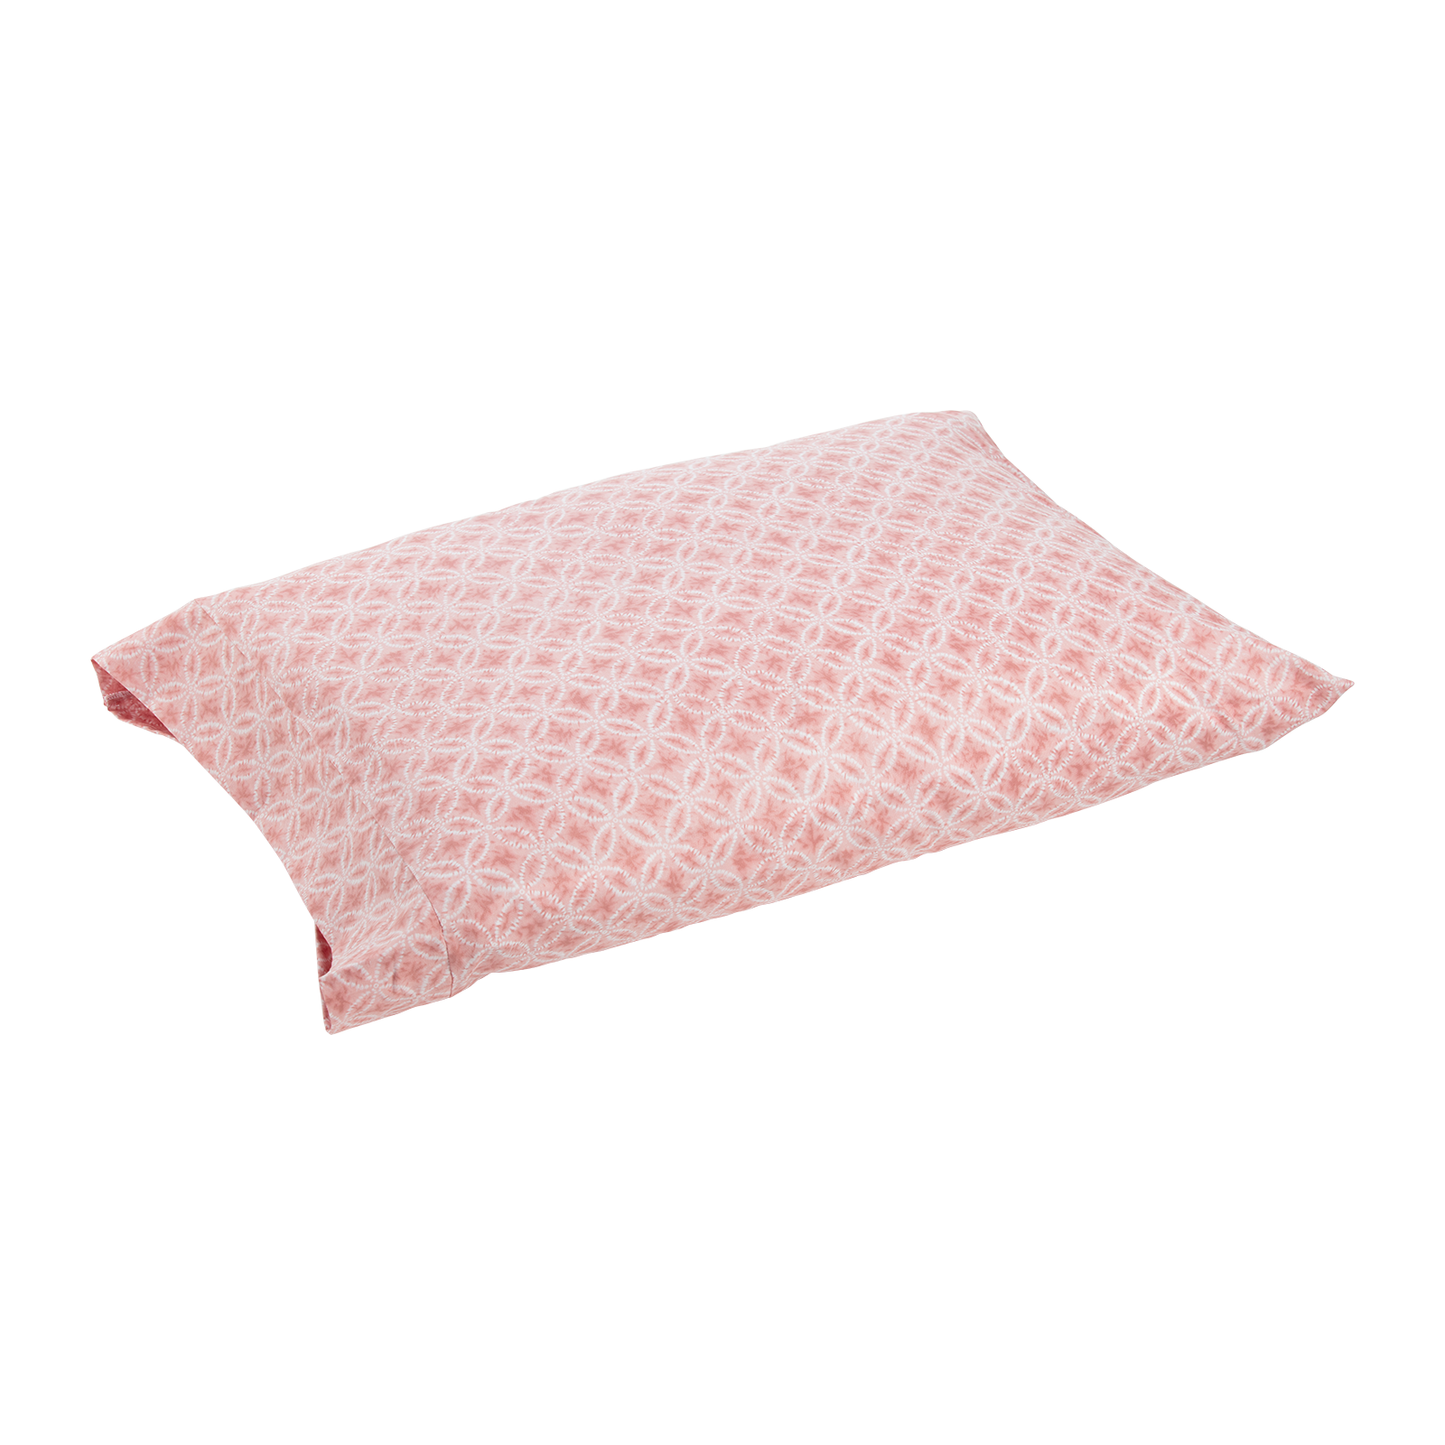 J-Life Taidai Pink Pillowcase